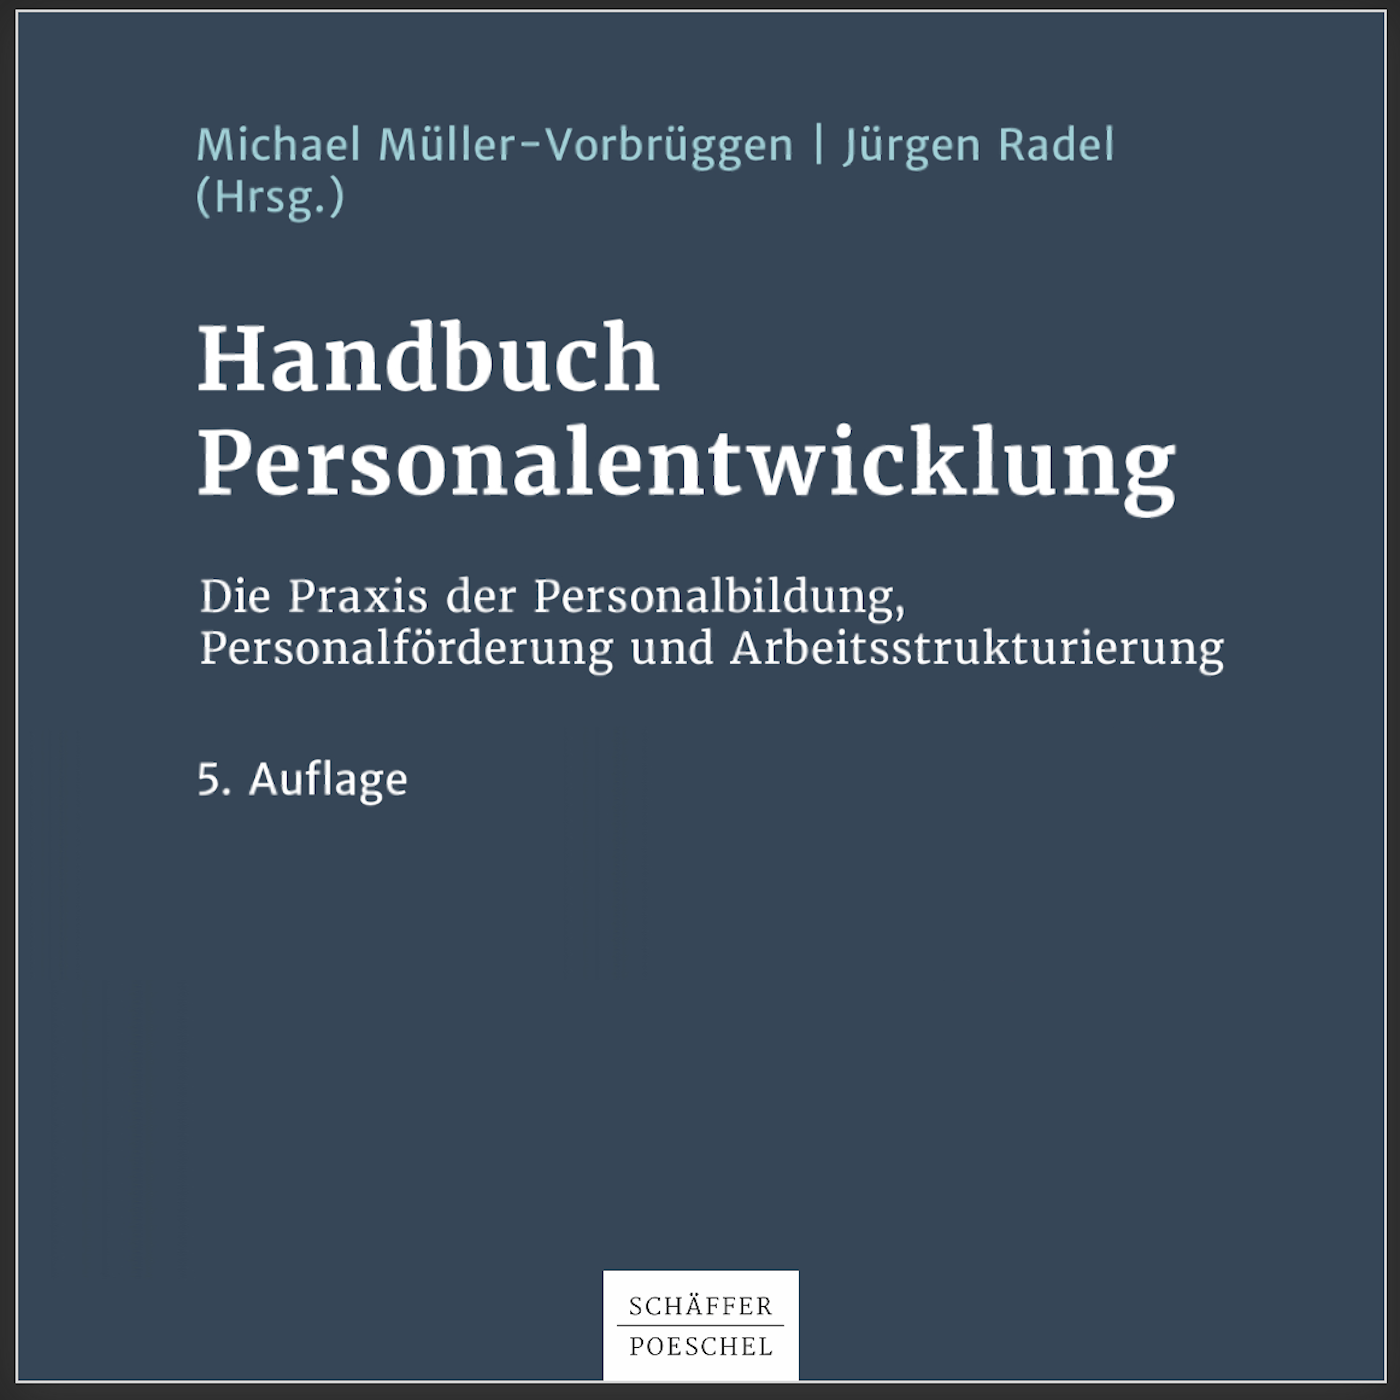 Handbuch Personalentwicklung (5. Auflage)